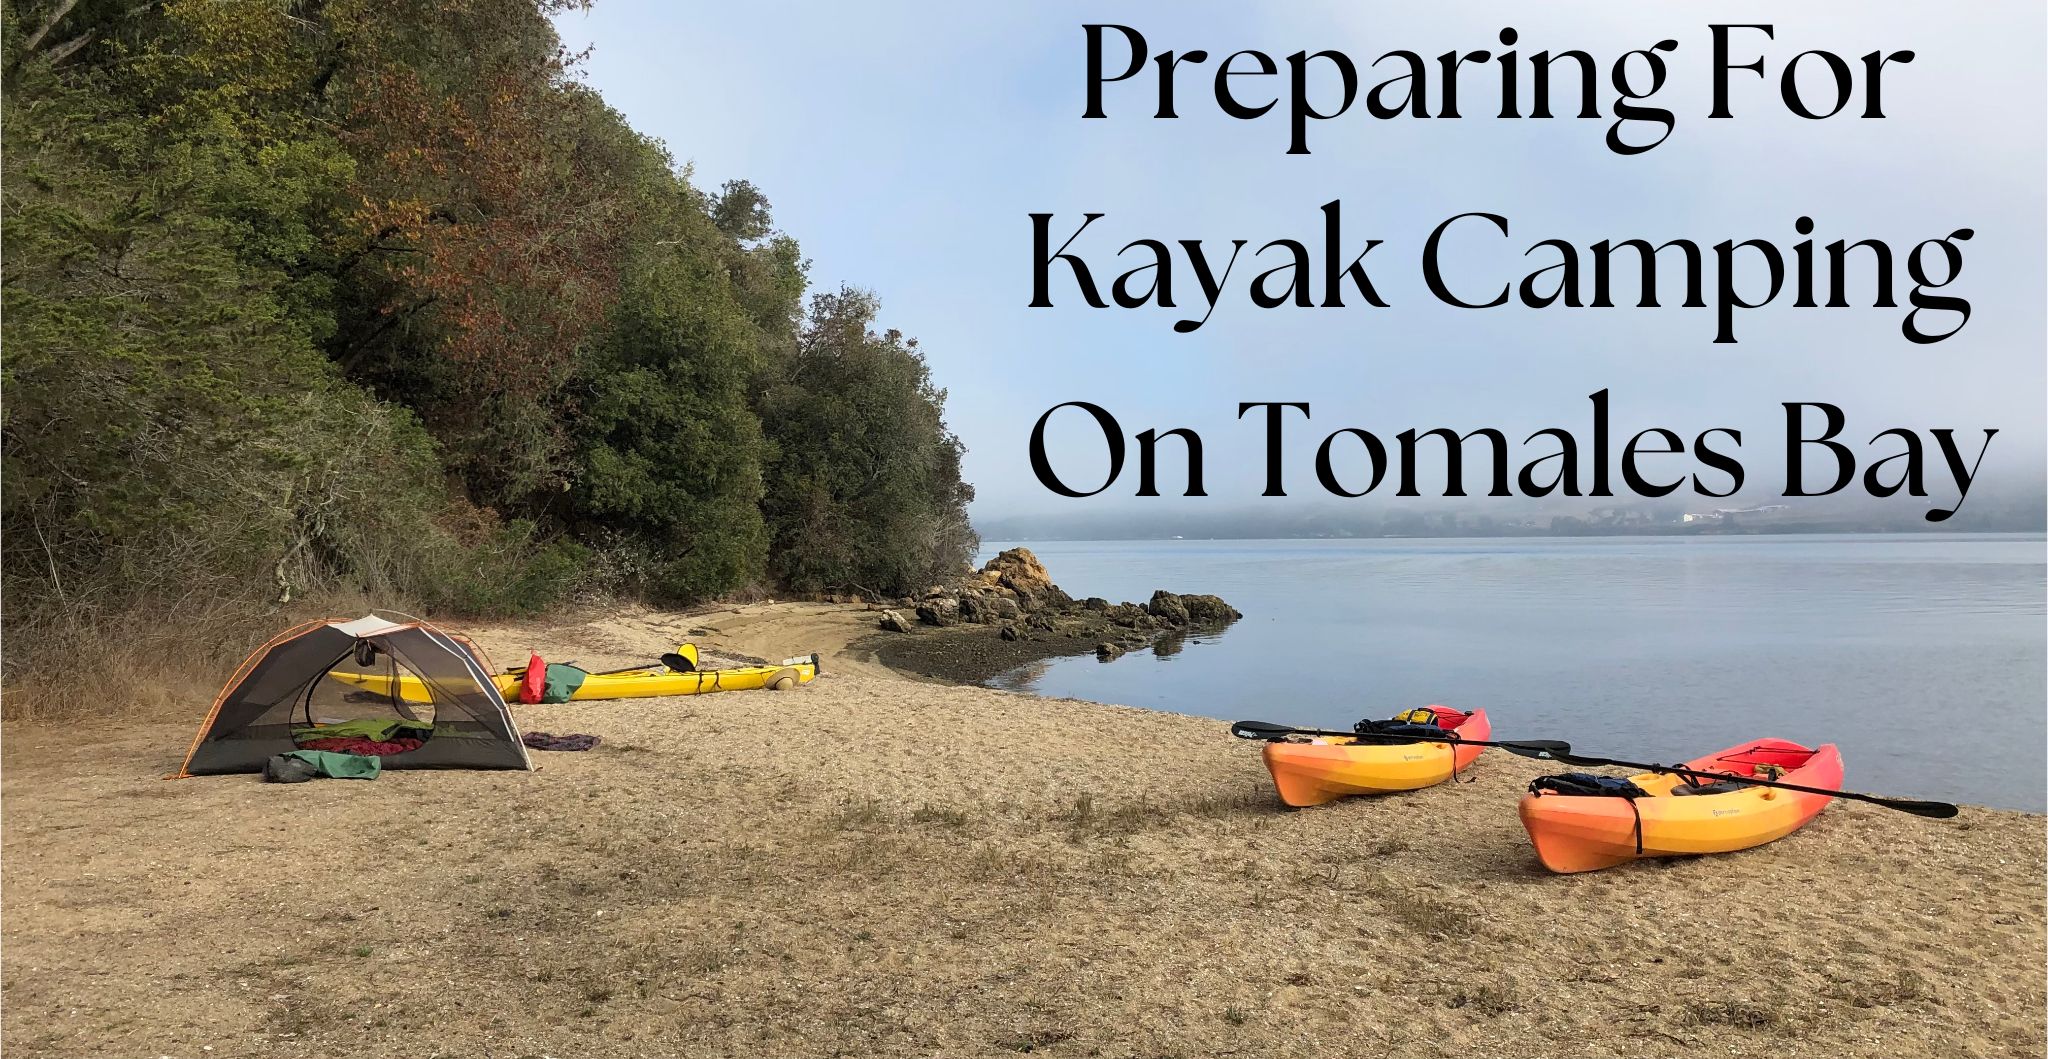 Preparing for kayak camping on Tomales Bay